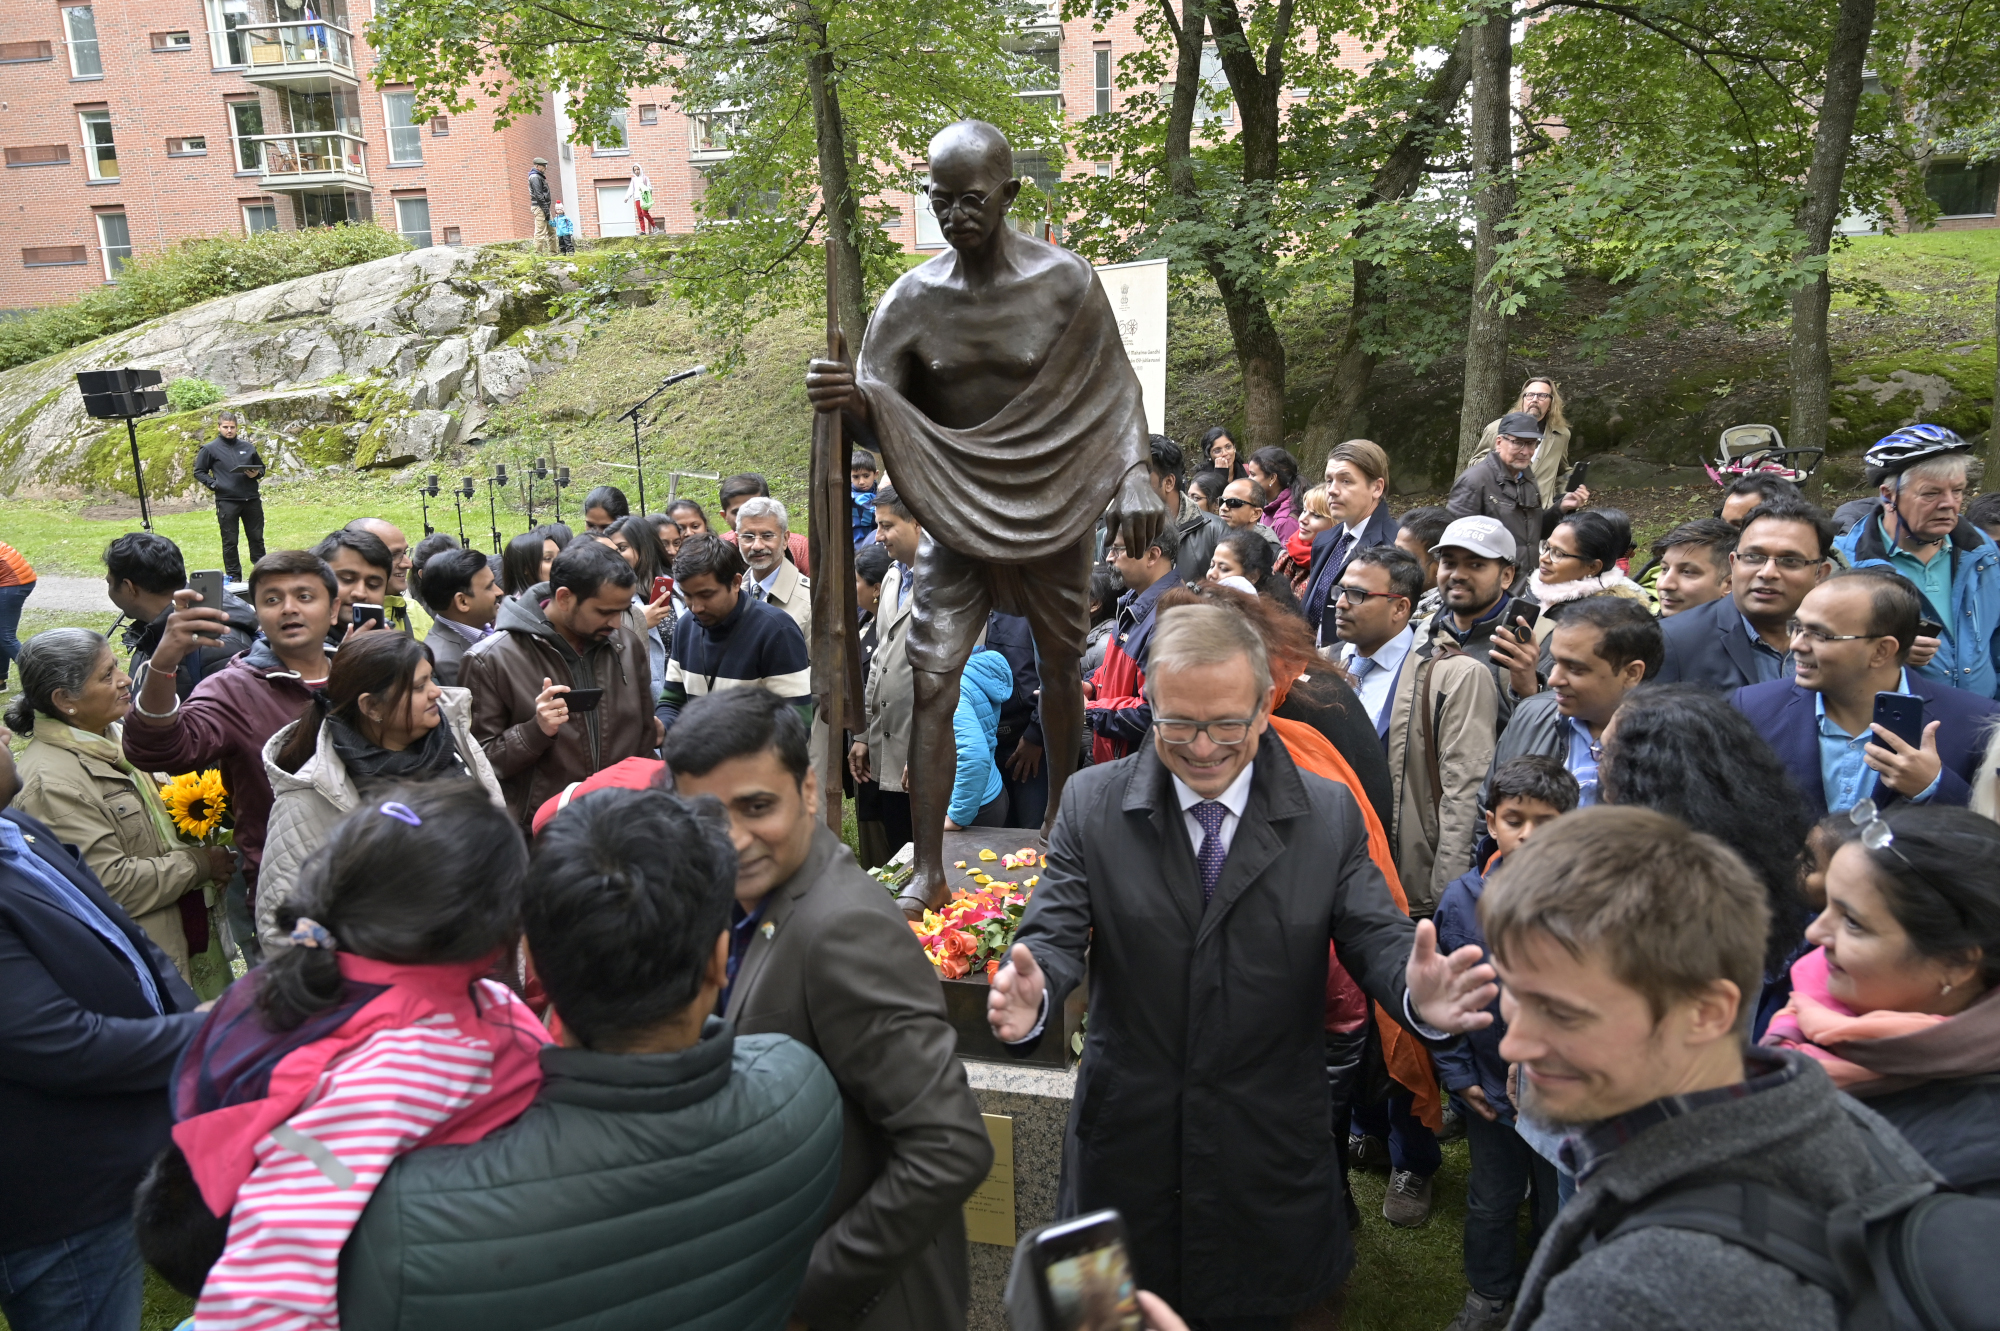 Patsas esittää Mahatma Gandin luonnollisen kokoisena pronssifiguurina. Patsaan ympärillä tilaisuuteen osallistuneita ihmisiä.